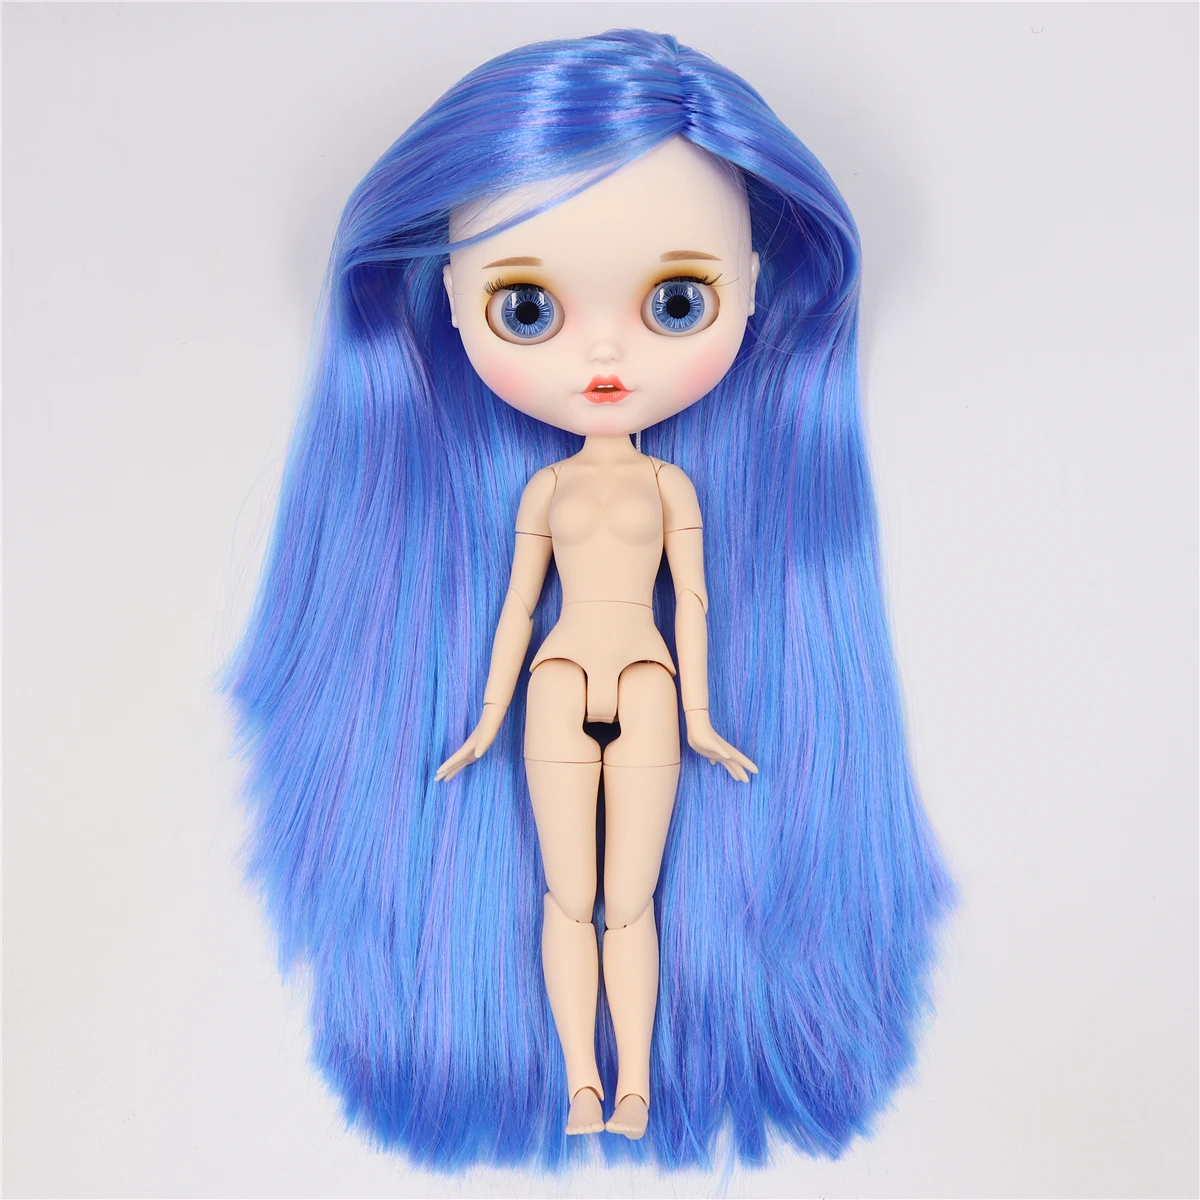 Ледяная фабрика blyth кукла белая кожа шарнир тела пользовательская кукла bjd игрушка матовое лицо с зубами голая кукла 30 см